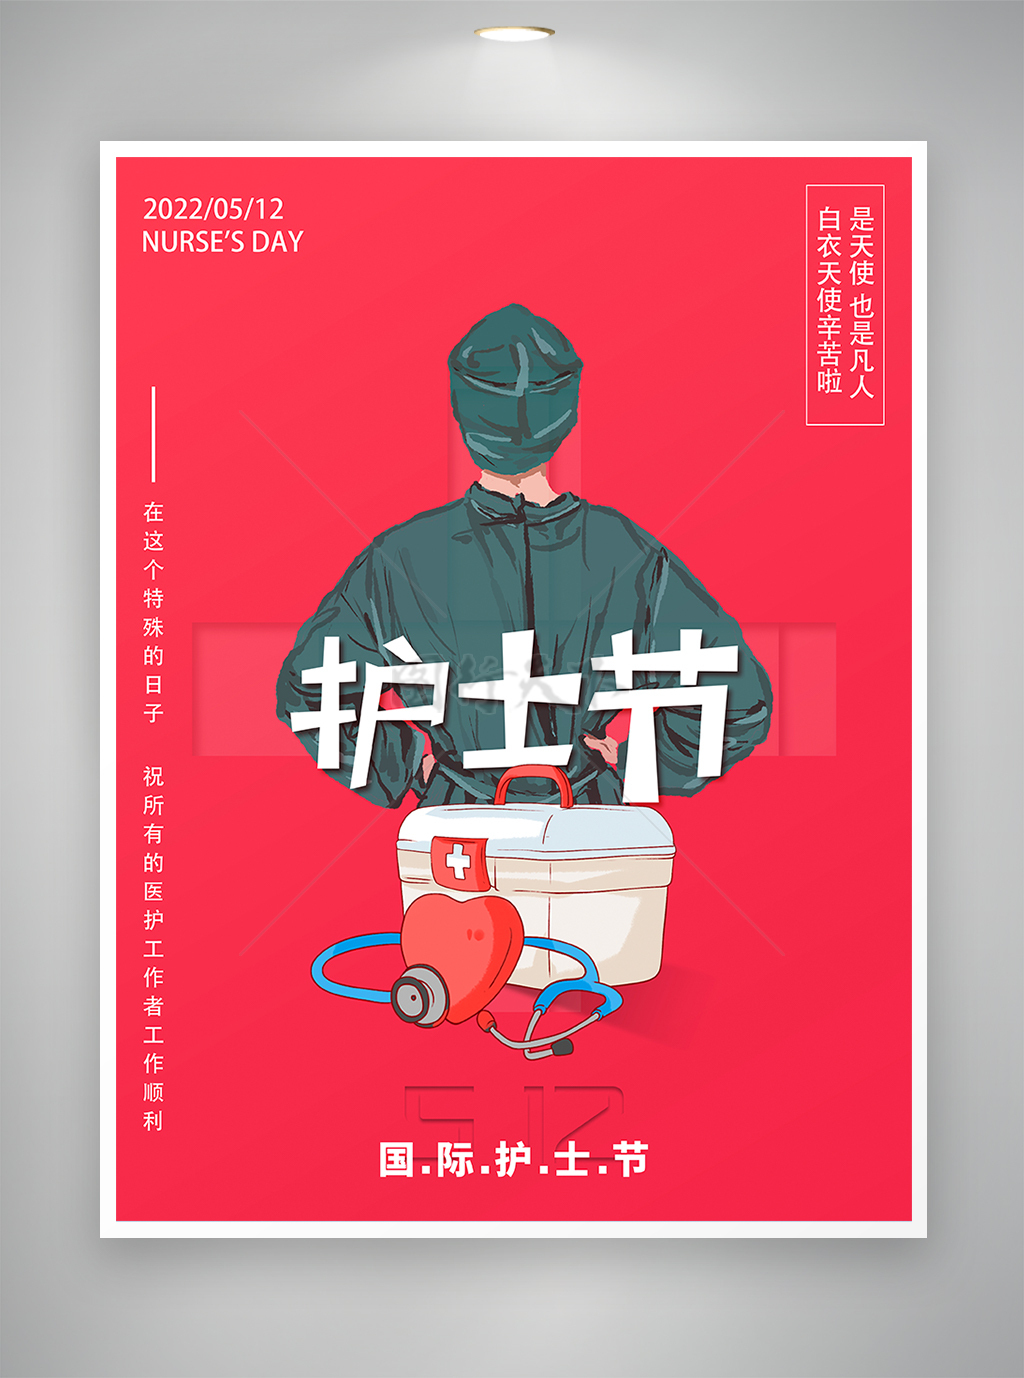 512国际护士节节日宣传海报